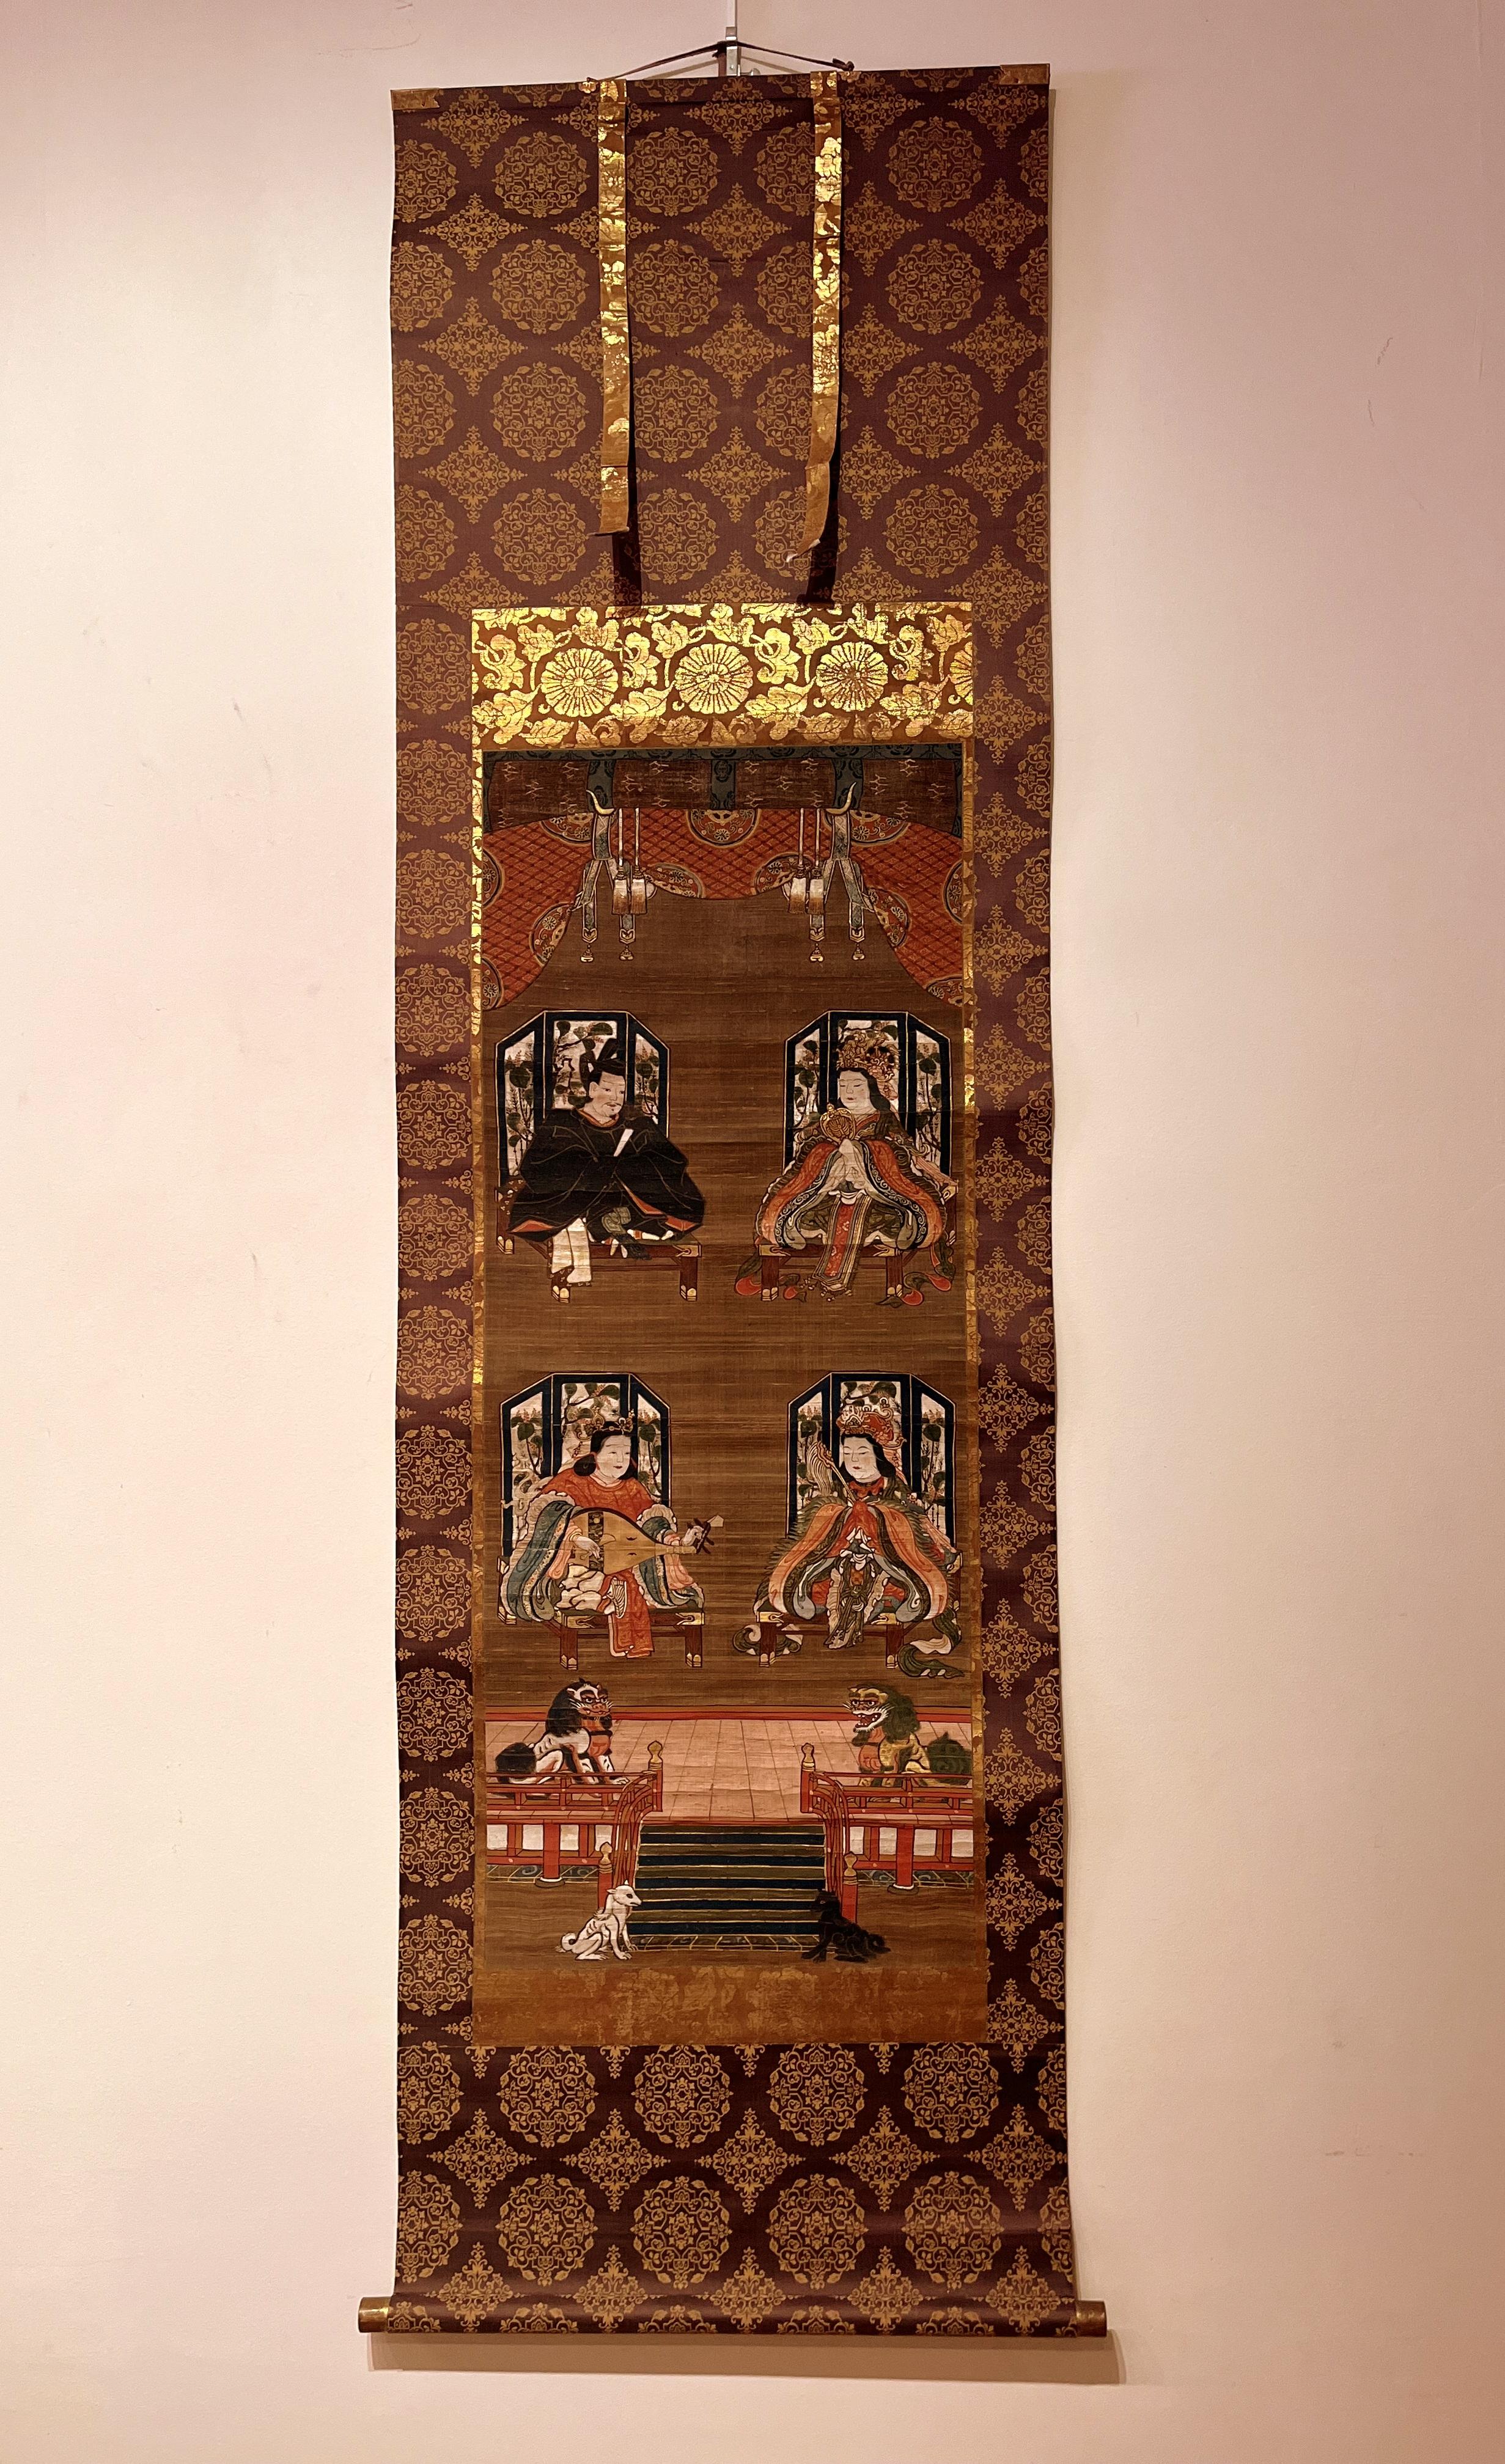 La peinture japonaise du sanctuaire de la religion Shito représente les quatre divinités en habits de cour représentant une hiérarchie de dieux Shinto locaux (kami) et avec une paire de lions gardiens et l'escalier inférieur avec un renard blanc et